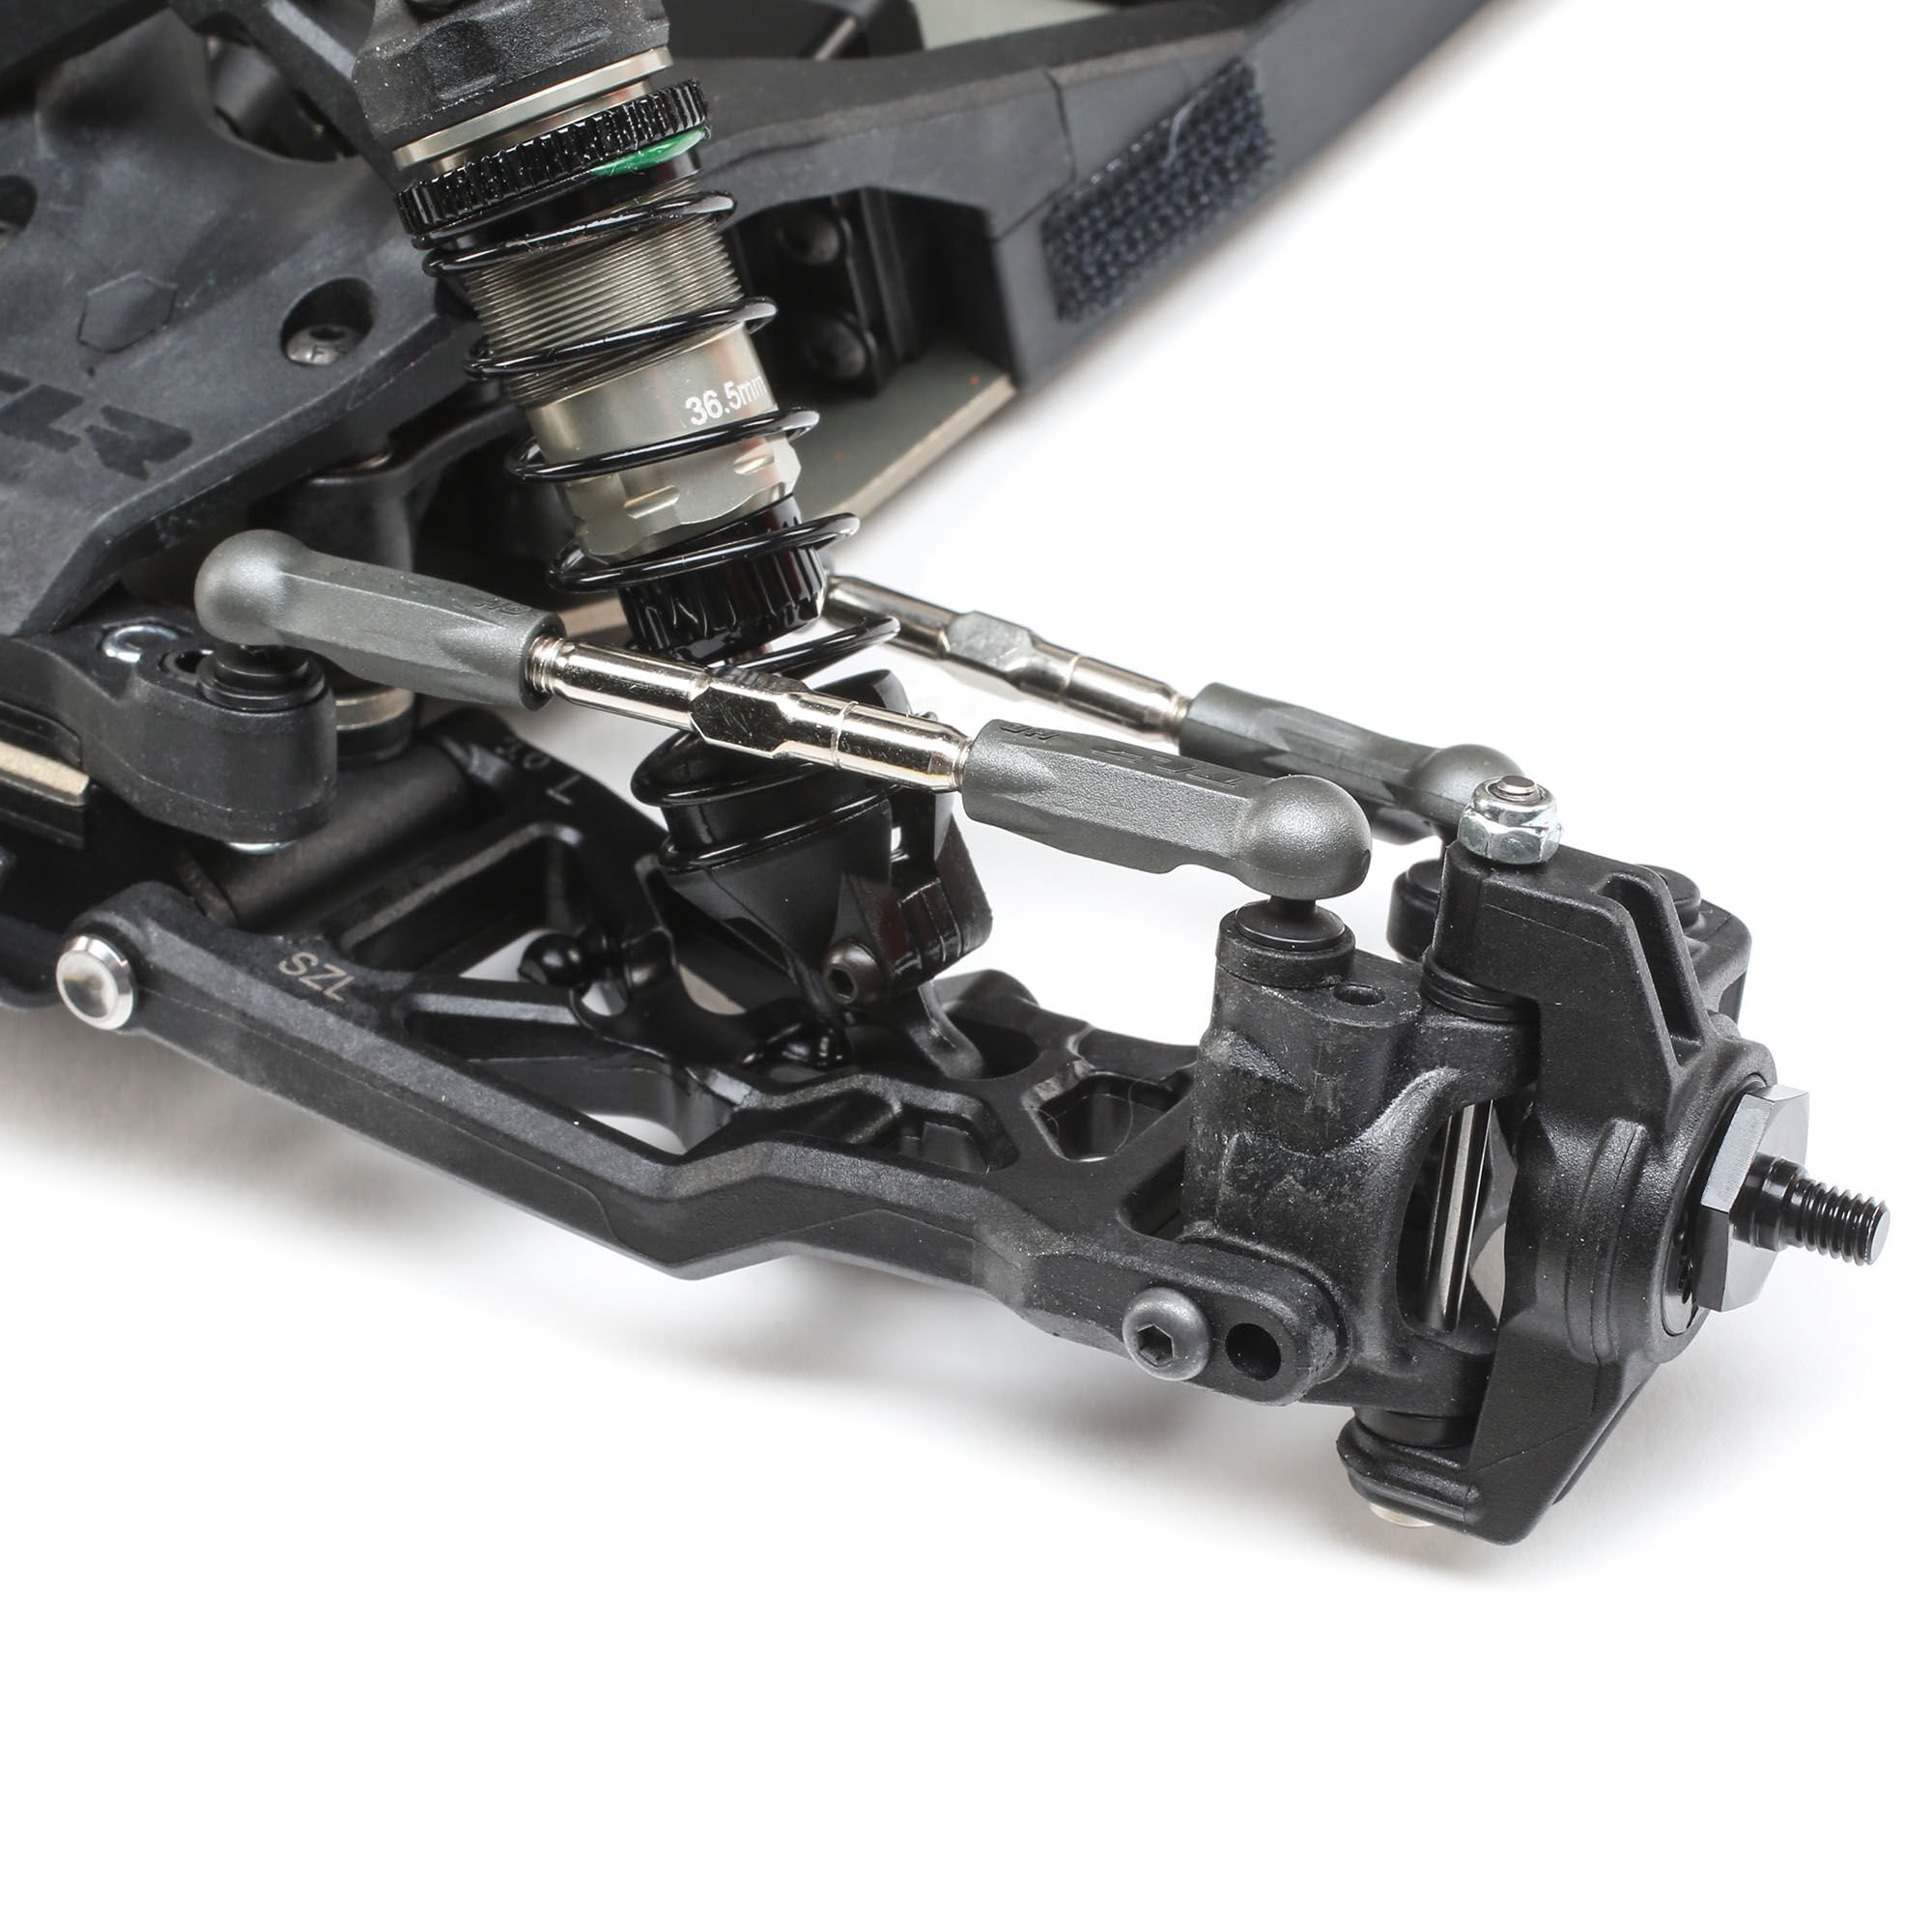 TLR 22 5.0 DC Race Roller Revamped Steering Geometry G3 12mm Big Bore Shocks